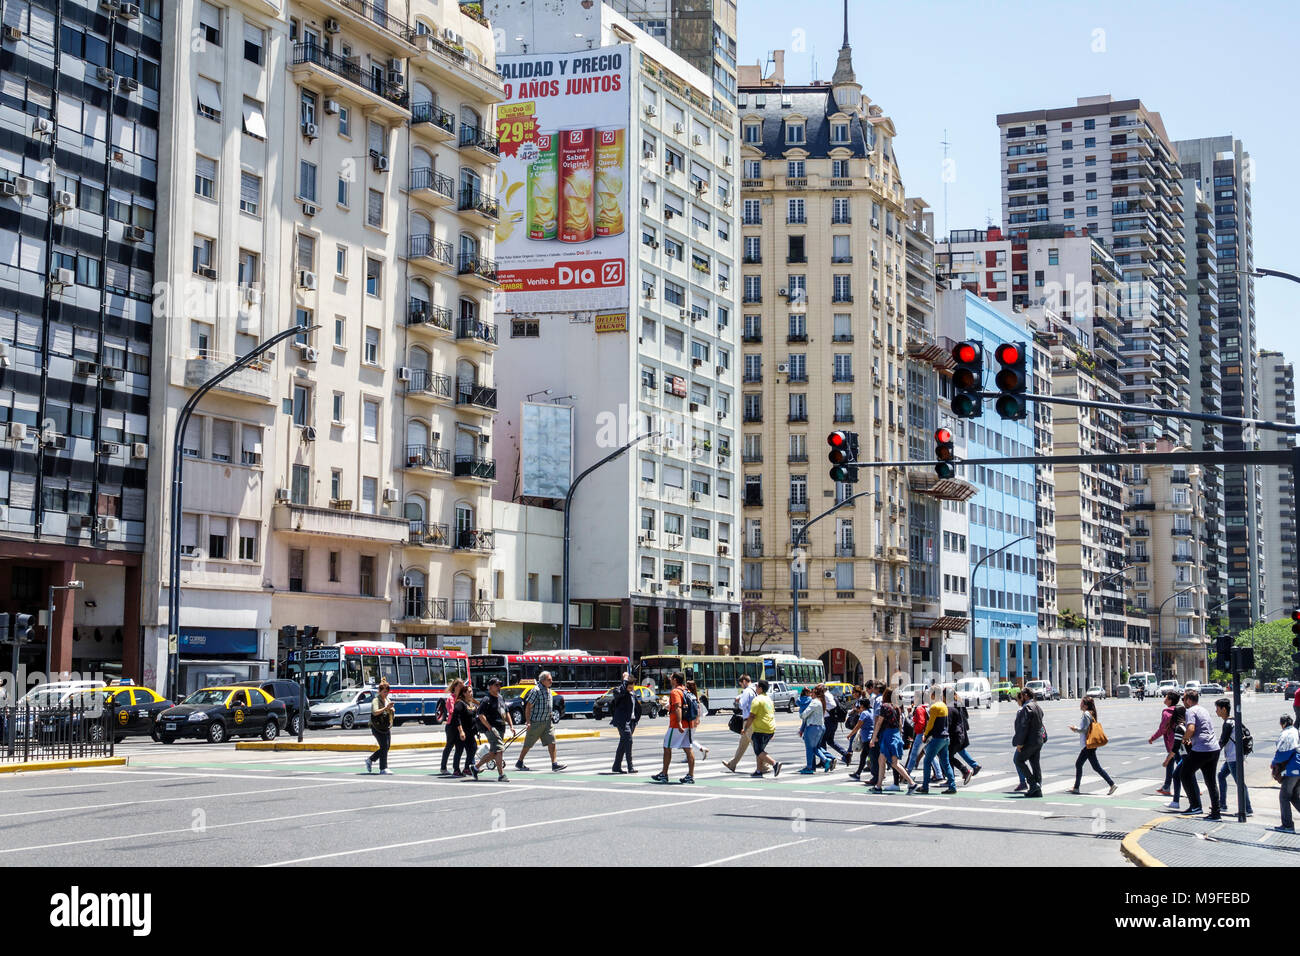 Buenos Aires Argentinien, Avenida del Libertador, Straßenszene, Gebäude, Fußgänger, Kreuzung, Rotlicht, Taxi, Bus, Hispanic, ARG171128156 Stockfoto